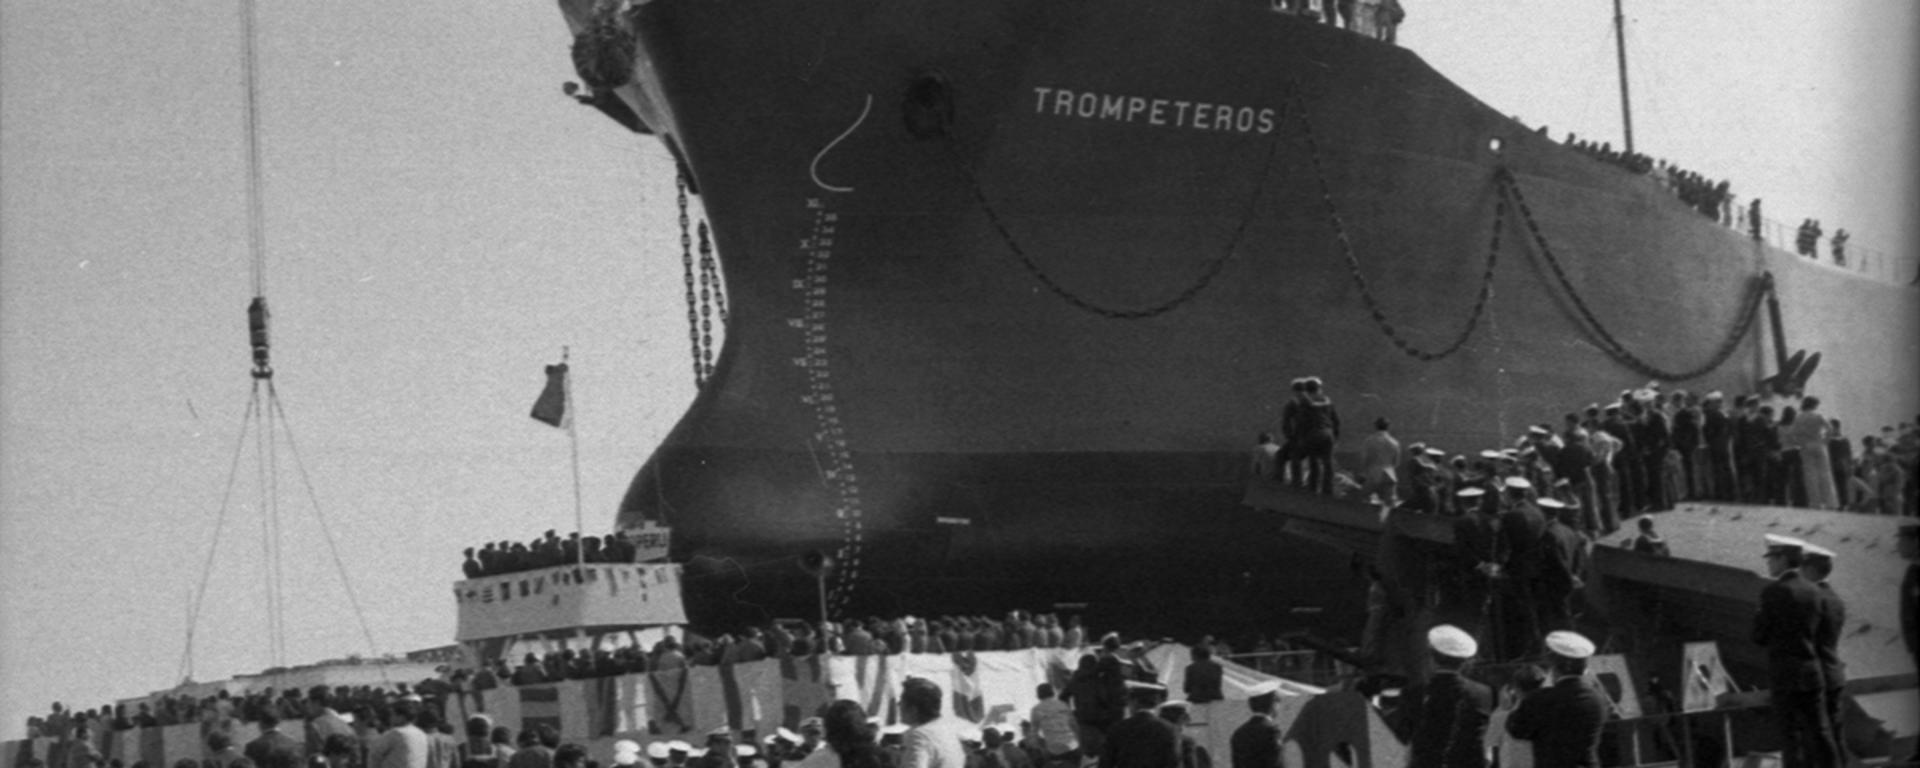 Trompeteros: la historia y fotos inéditas del primer buque petrolero construido íntegramente en el Perú